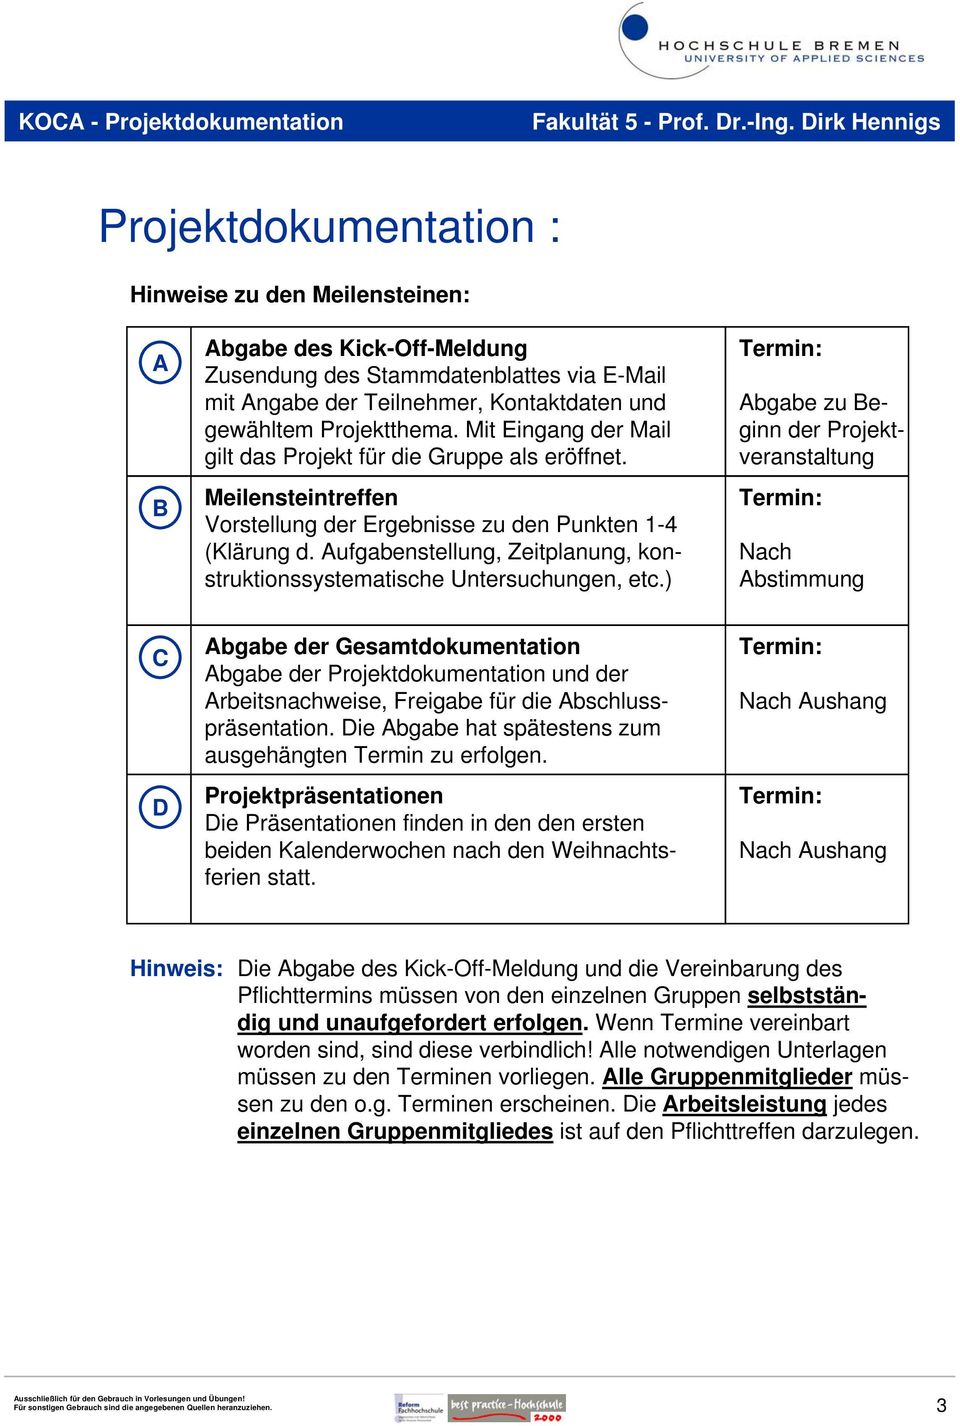 Aufgabenstellung, Zeitplanung, konstruktionssystematische Untersuchungen, etc.